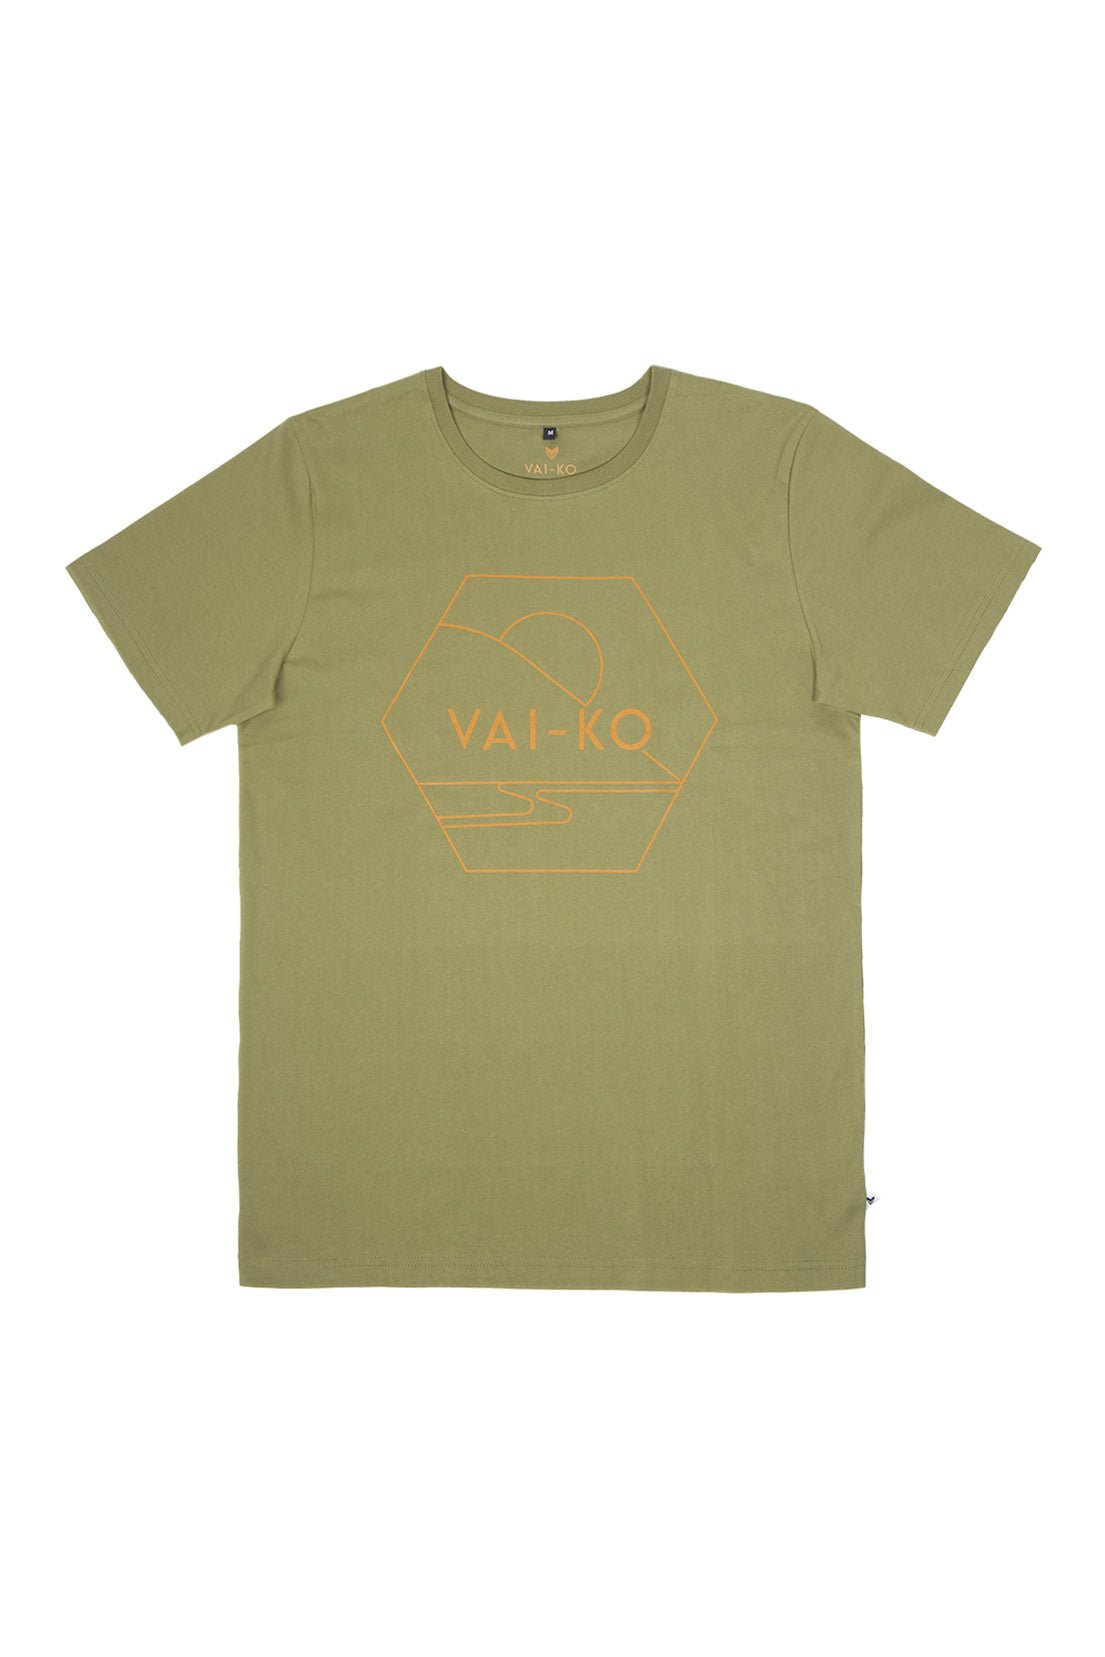 Kultakero T-shirt, Men - VAI-KOshirts